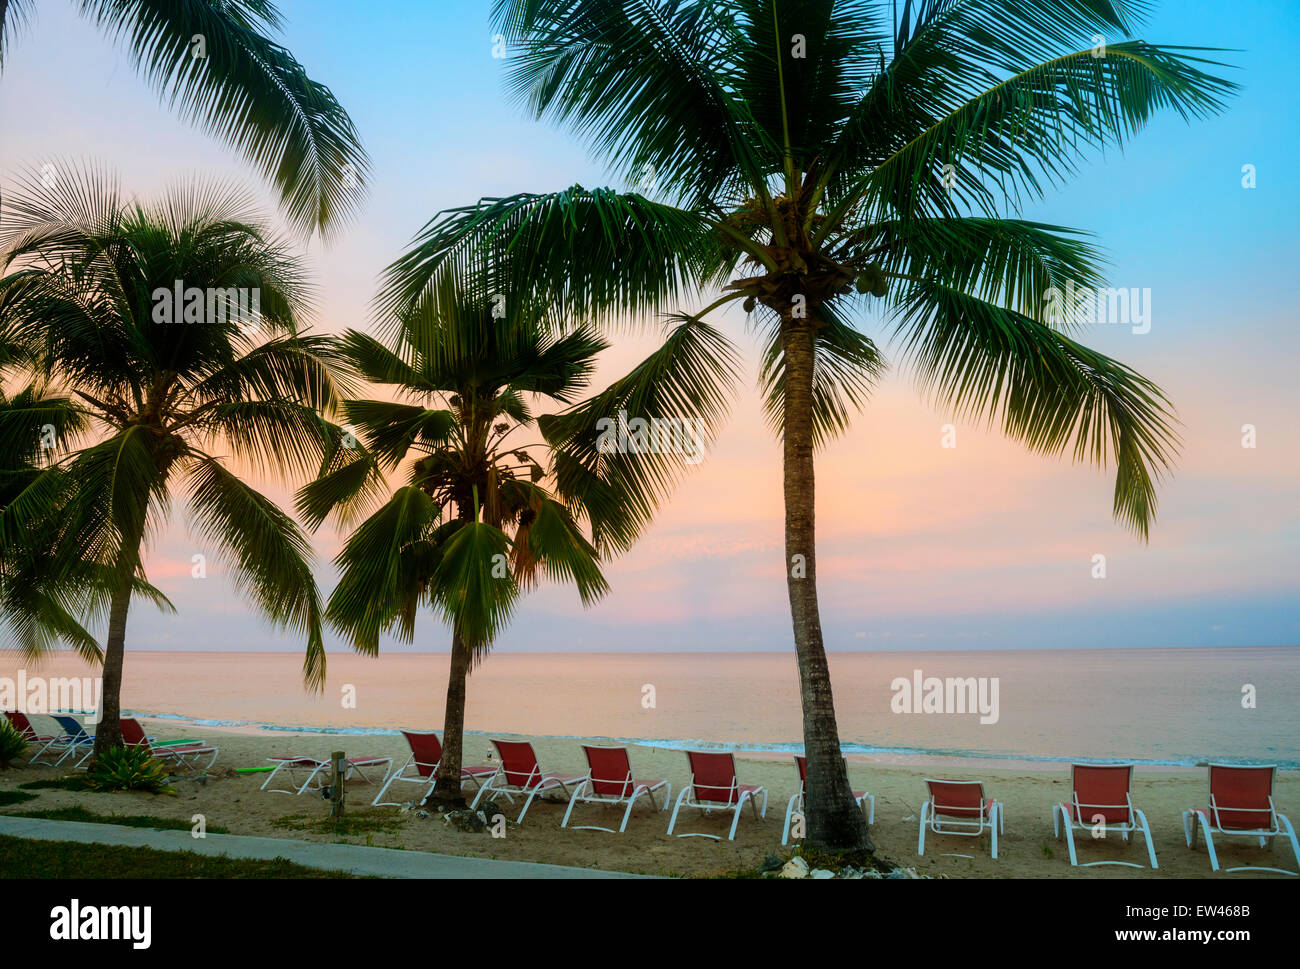 Lever du soleil couleurs délicates peintures sur les Caraïbes sur l'île de Sainte-Croix, Îles Vierges des États-Unis. Plage, palmiers, chaises de plage. Banque D'Images